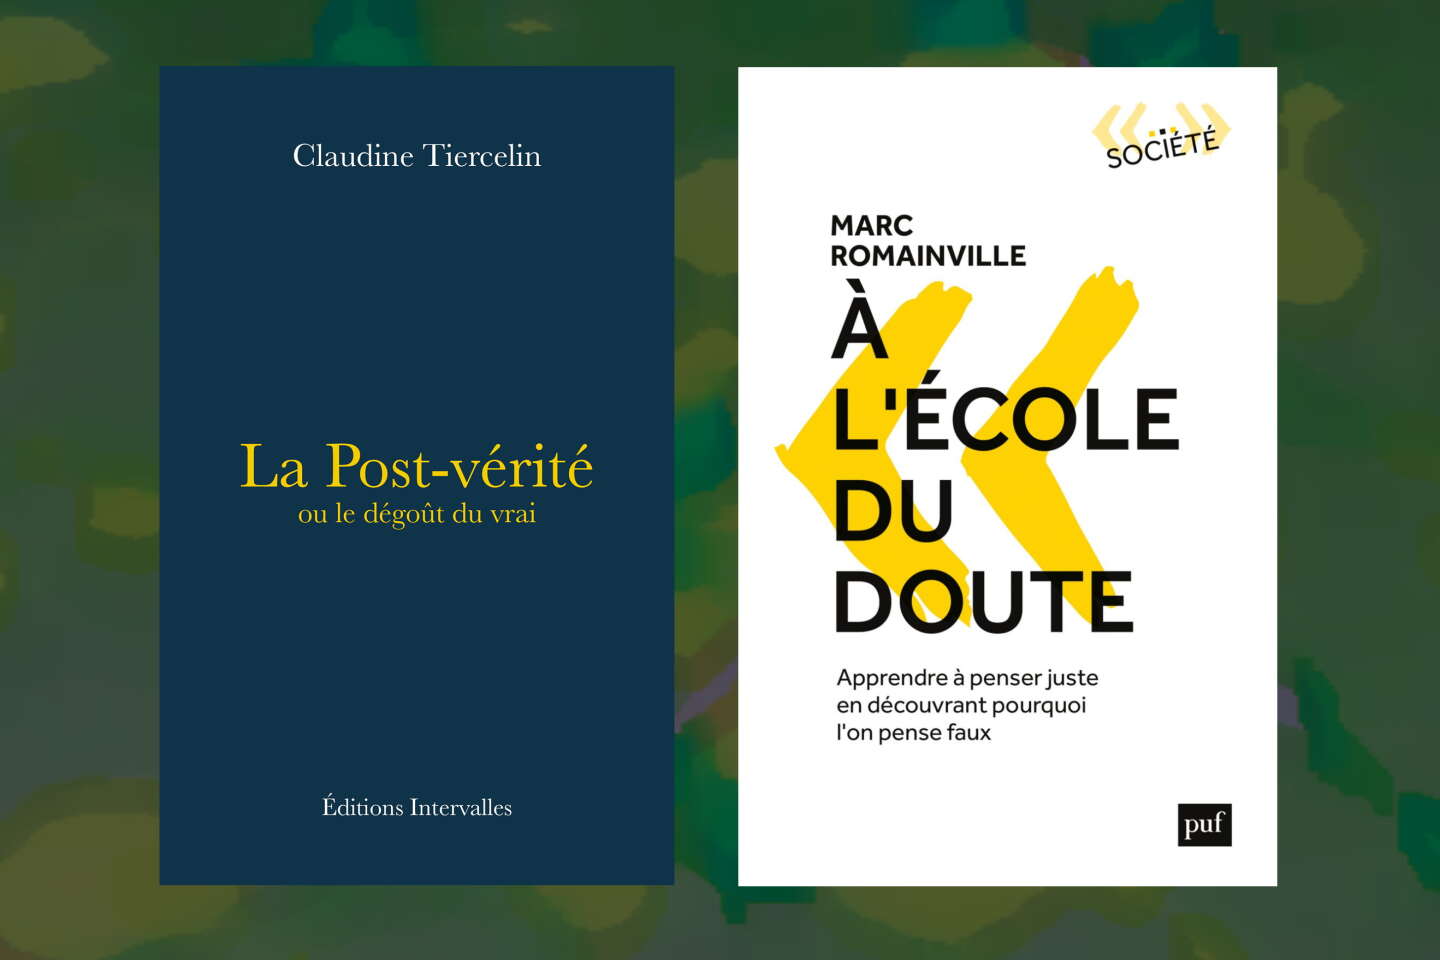 « La Post-vérité », de Claudine Tiercelin, et « A l’école du doute », de Marc Romainville : la chronique « essai »/ etc. de Roger-Pol Droit